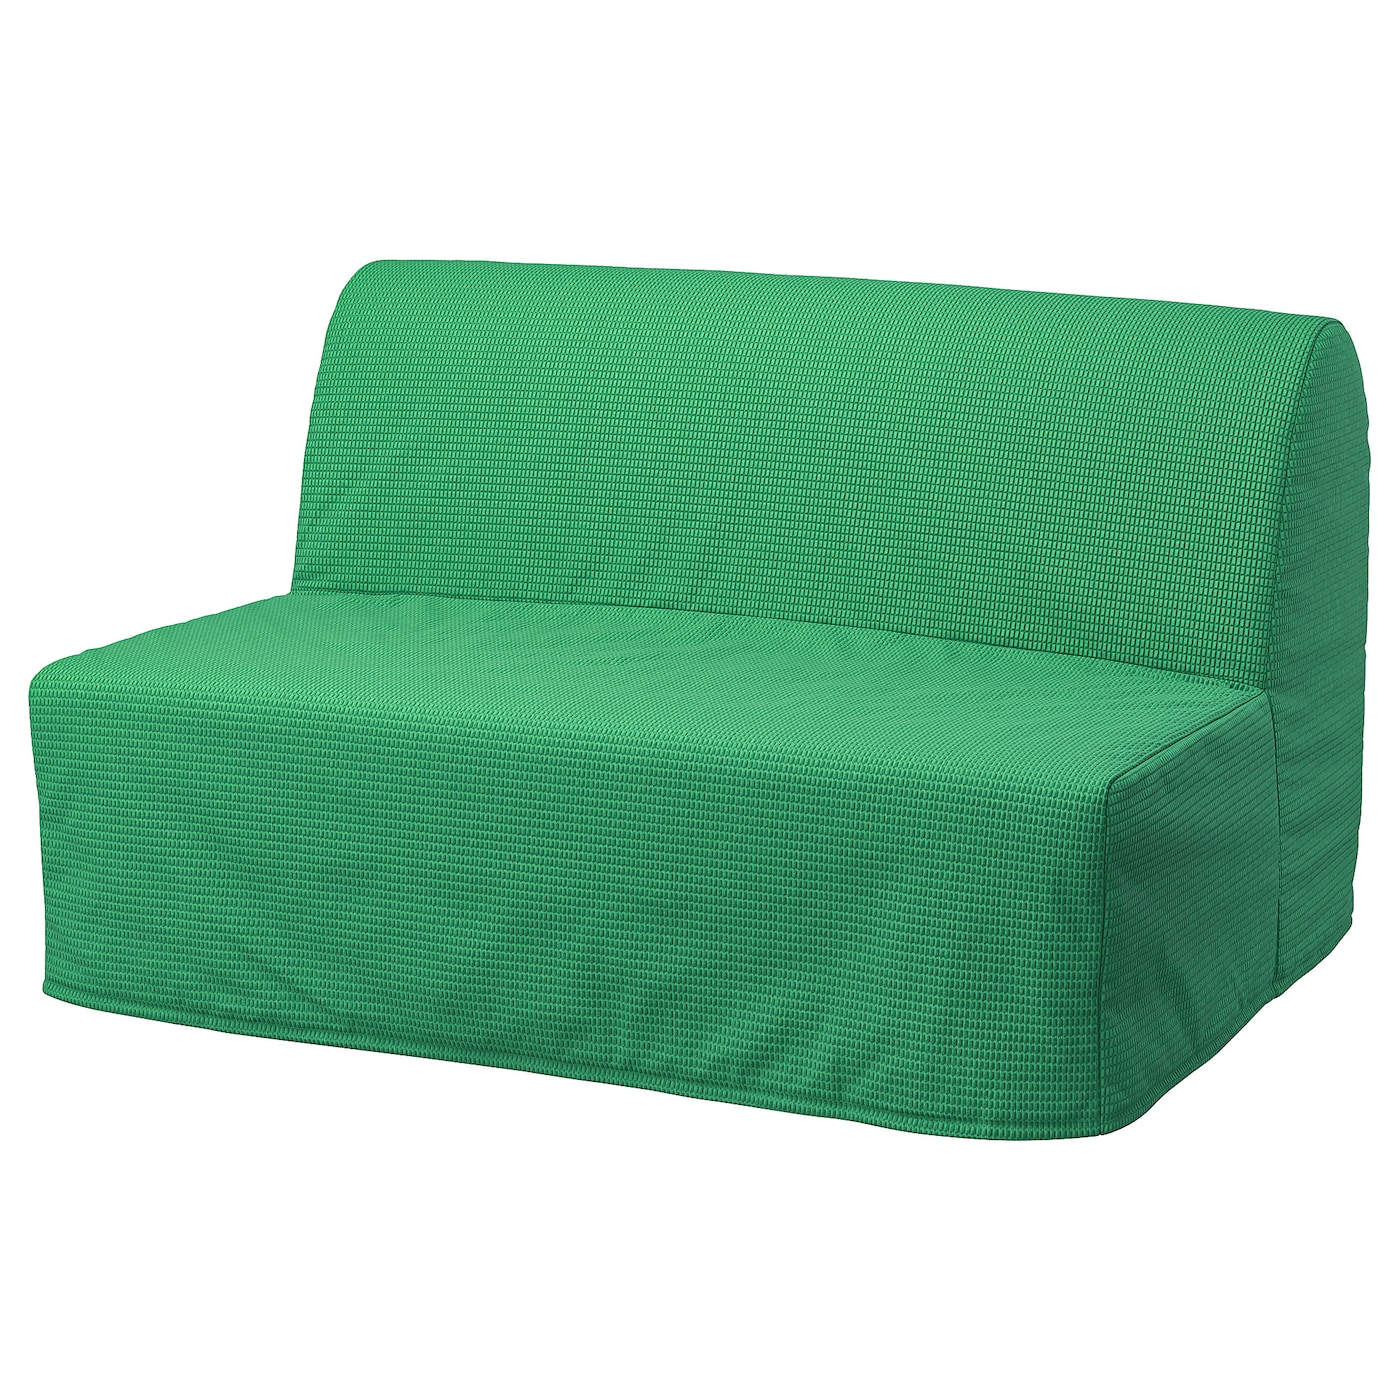 ЛИКСЕЛЕ ЛЁВОС 2 раскладных дивана-кровати, Вансбро ярко-зеленый LYCKSELE LÖVÅS IKEA матрас для дивана первый мебельный винсен 3